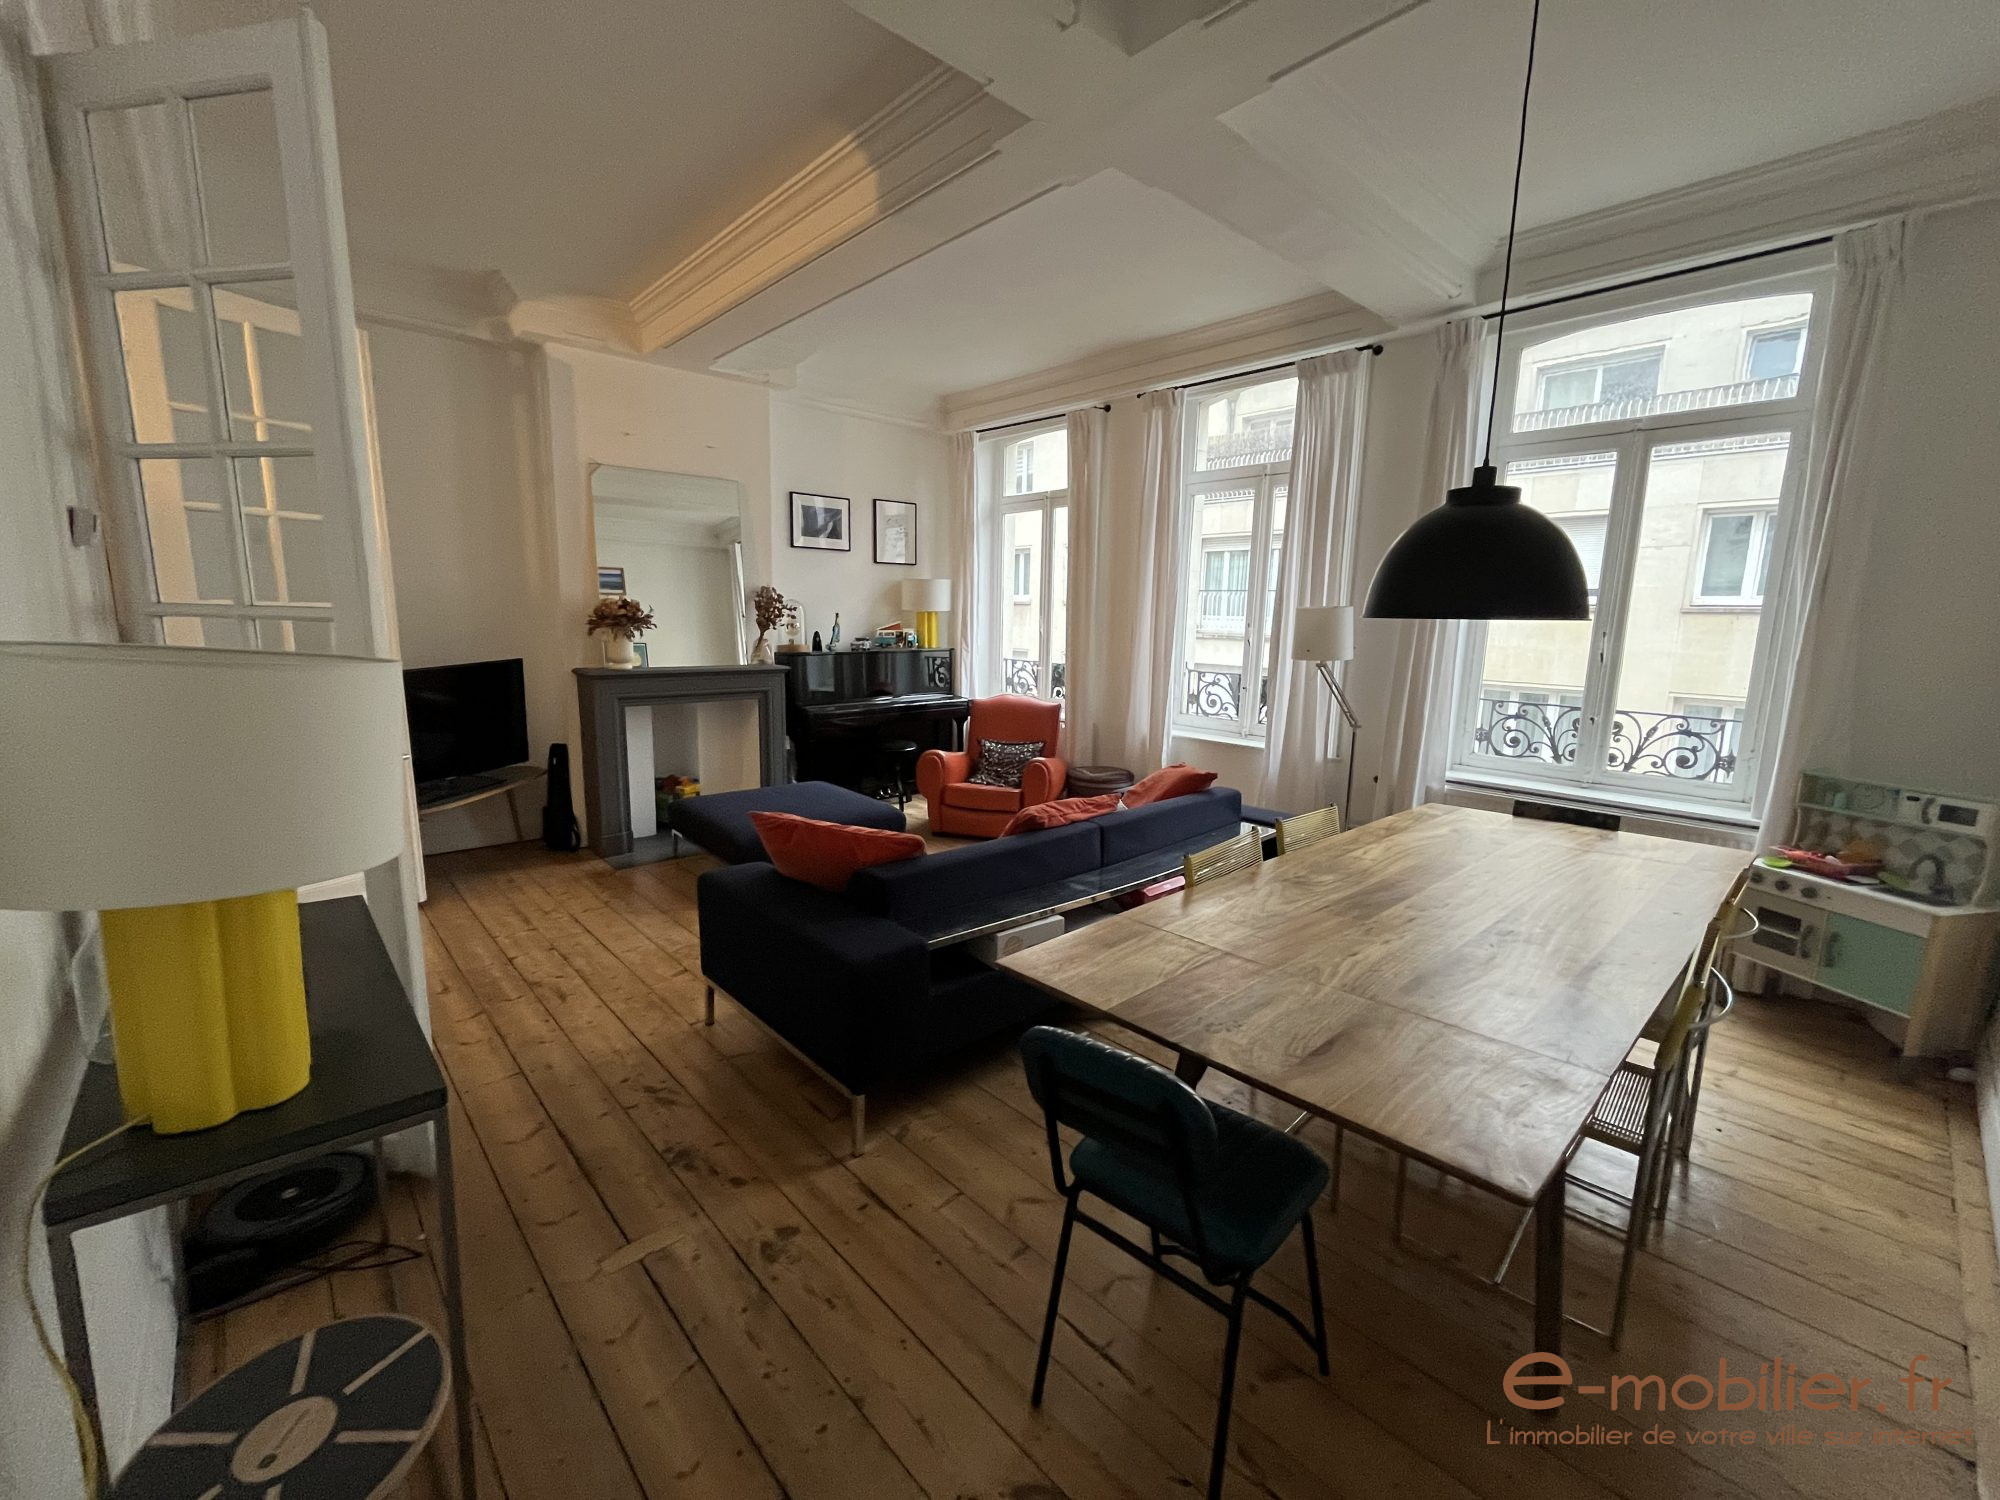 Vente Appartement 96m² 3 Pièces à Lille (59000) - E-Mobilier.Fr